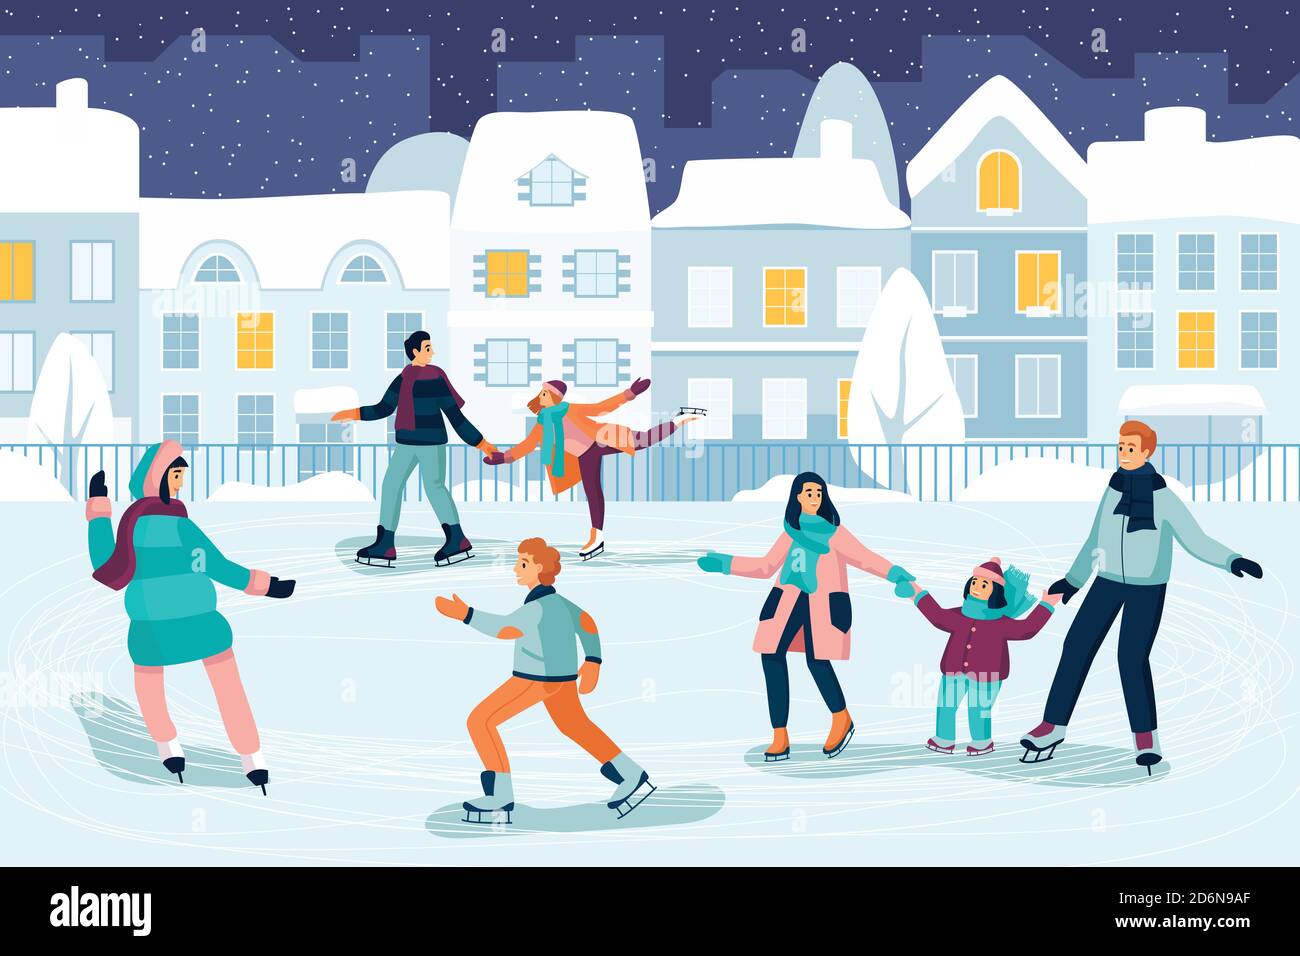 Glückliche junge Leute beim Schlittschuhlaufen. Paare, Kinder und Familie verbringen Zeit auf der Eisbahn. Vektor flache Cartoon-Illustration. Outdoor-Aktivitäten im Winter und Meer Stock Vektor